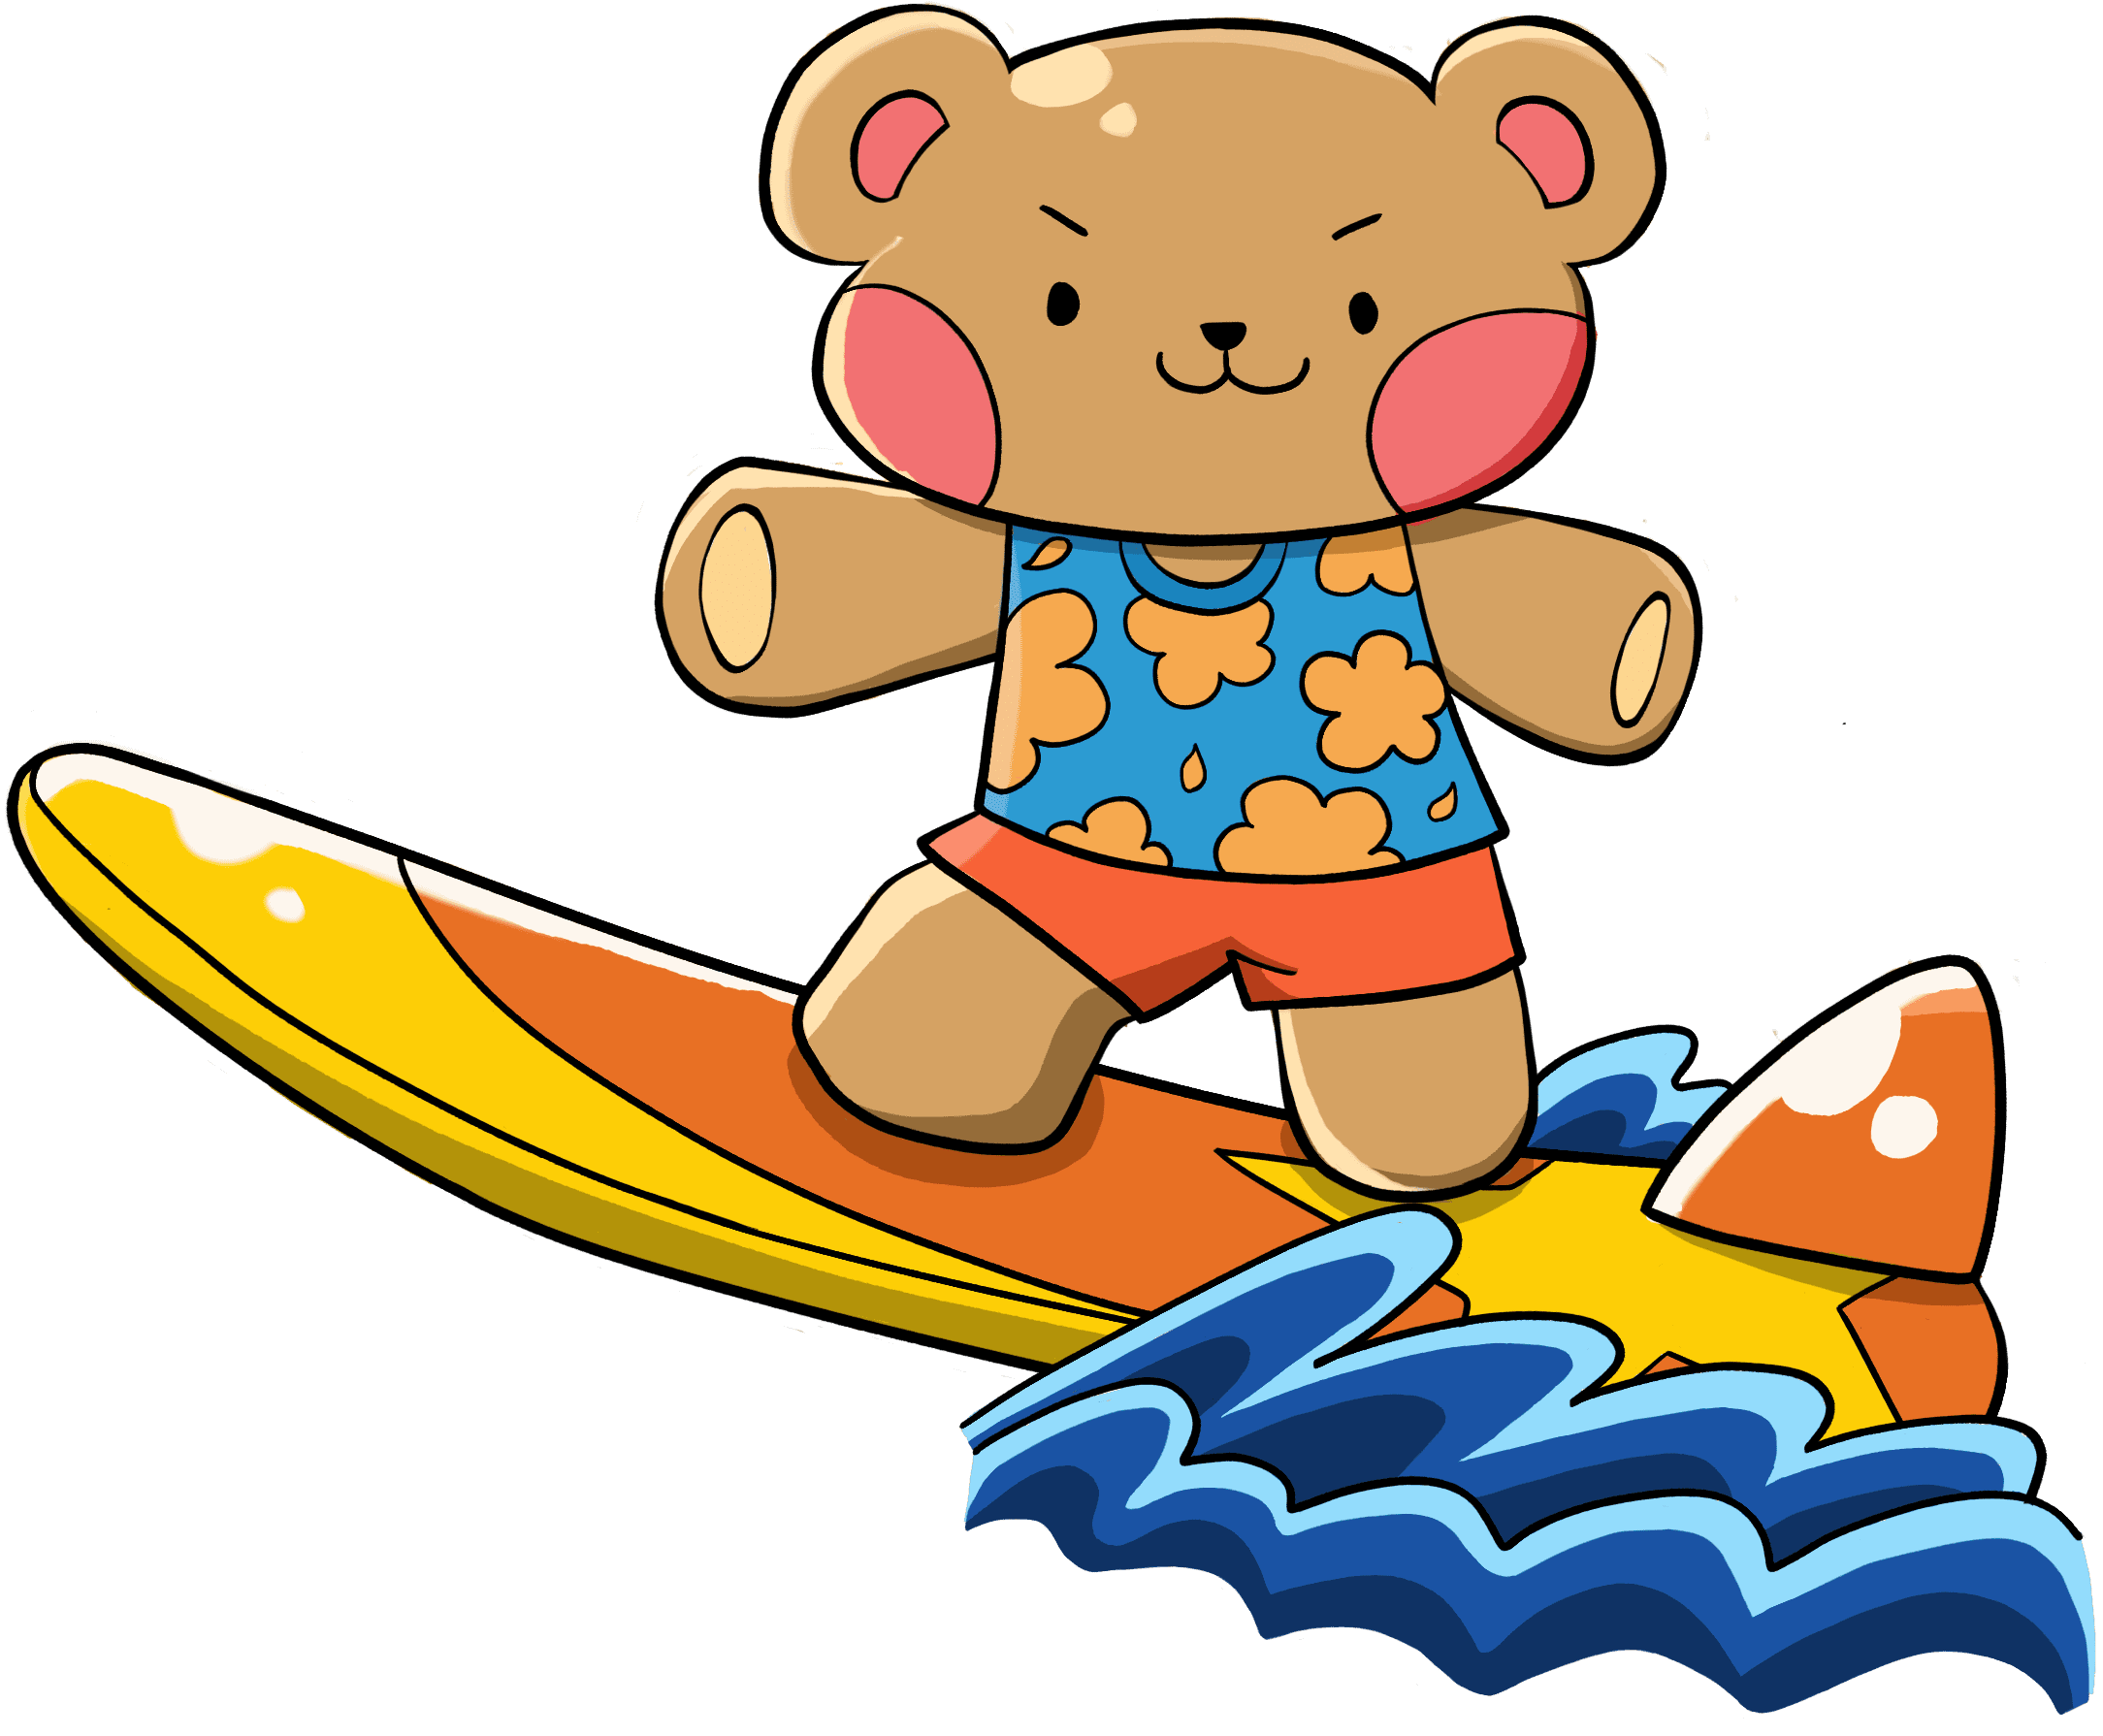 Sammy el oso de peluche surfeando en una ola